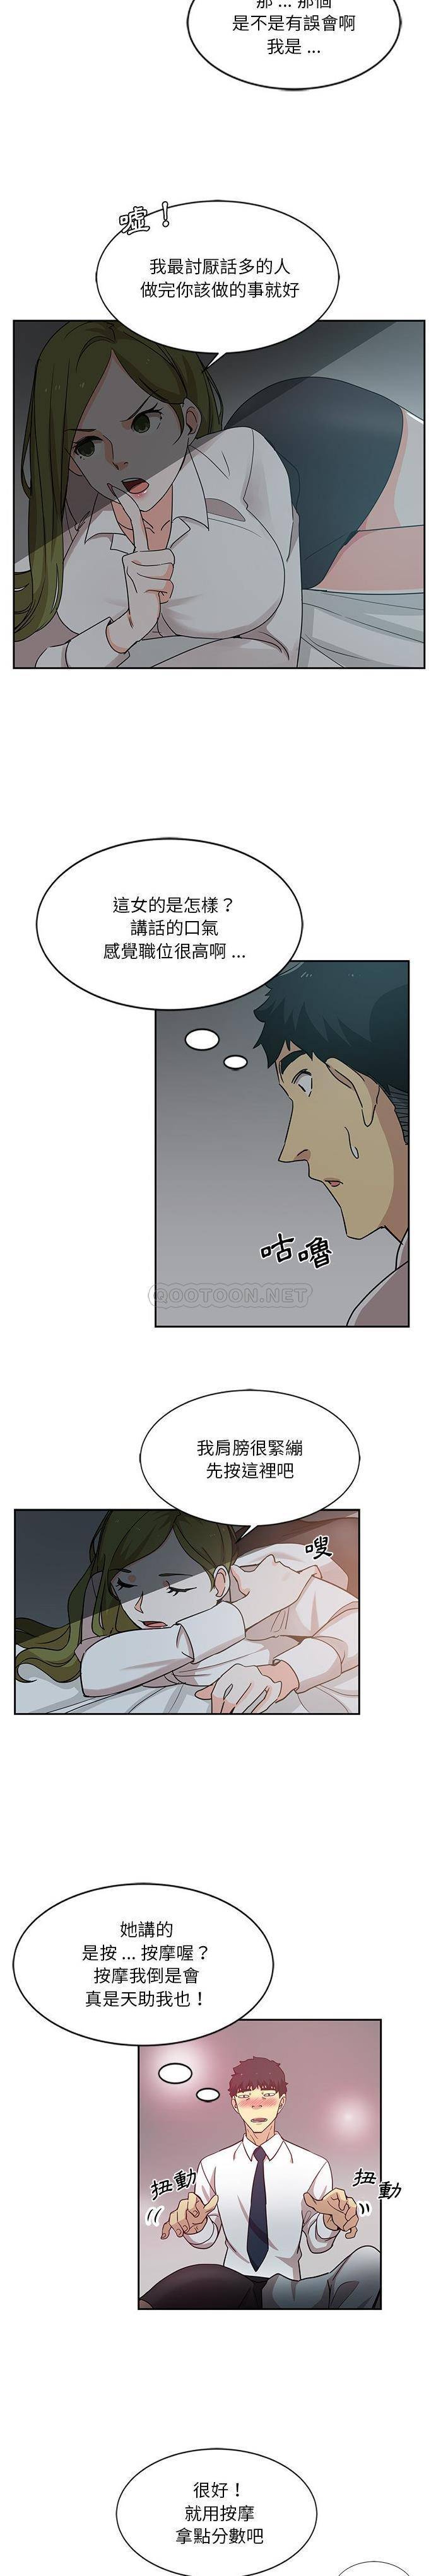 韩国污漫画 危險純友誼 第6话 7